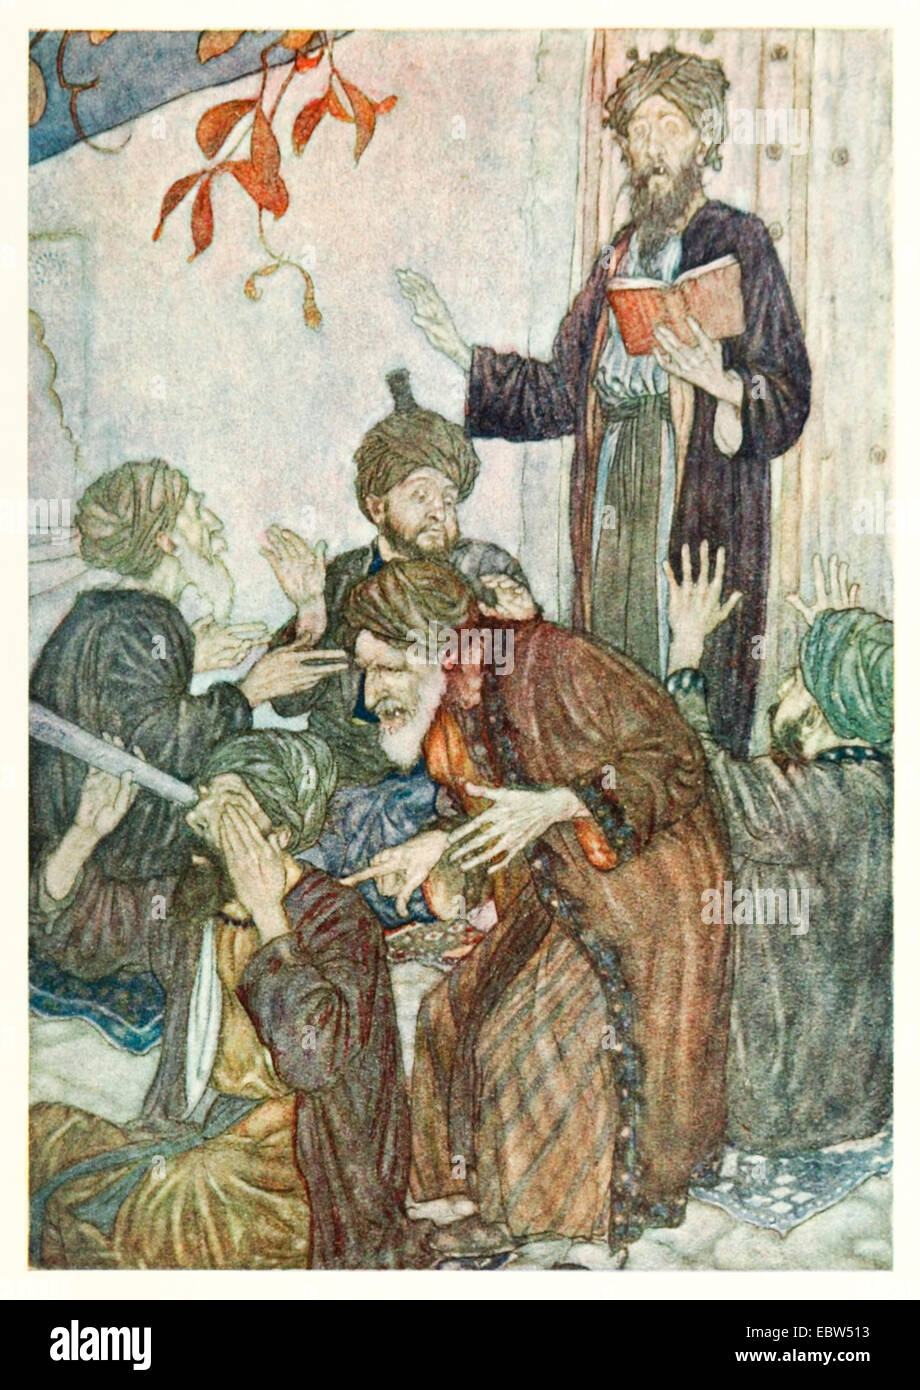 Die Enthüllungen von Devout - Edmund Dulac Illustration aus 'Rubáiyát von Omar Khayyám'. Siehe Beschreibung weitere Informationen Stockfoto